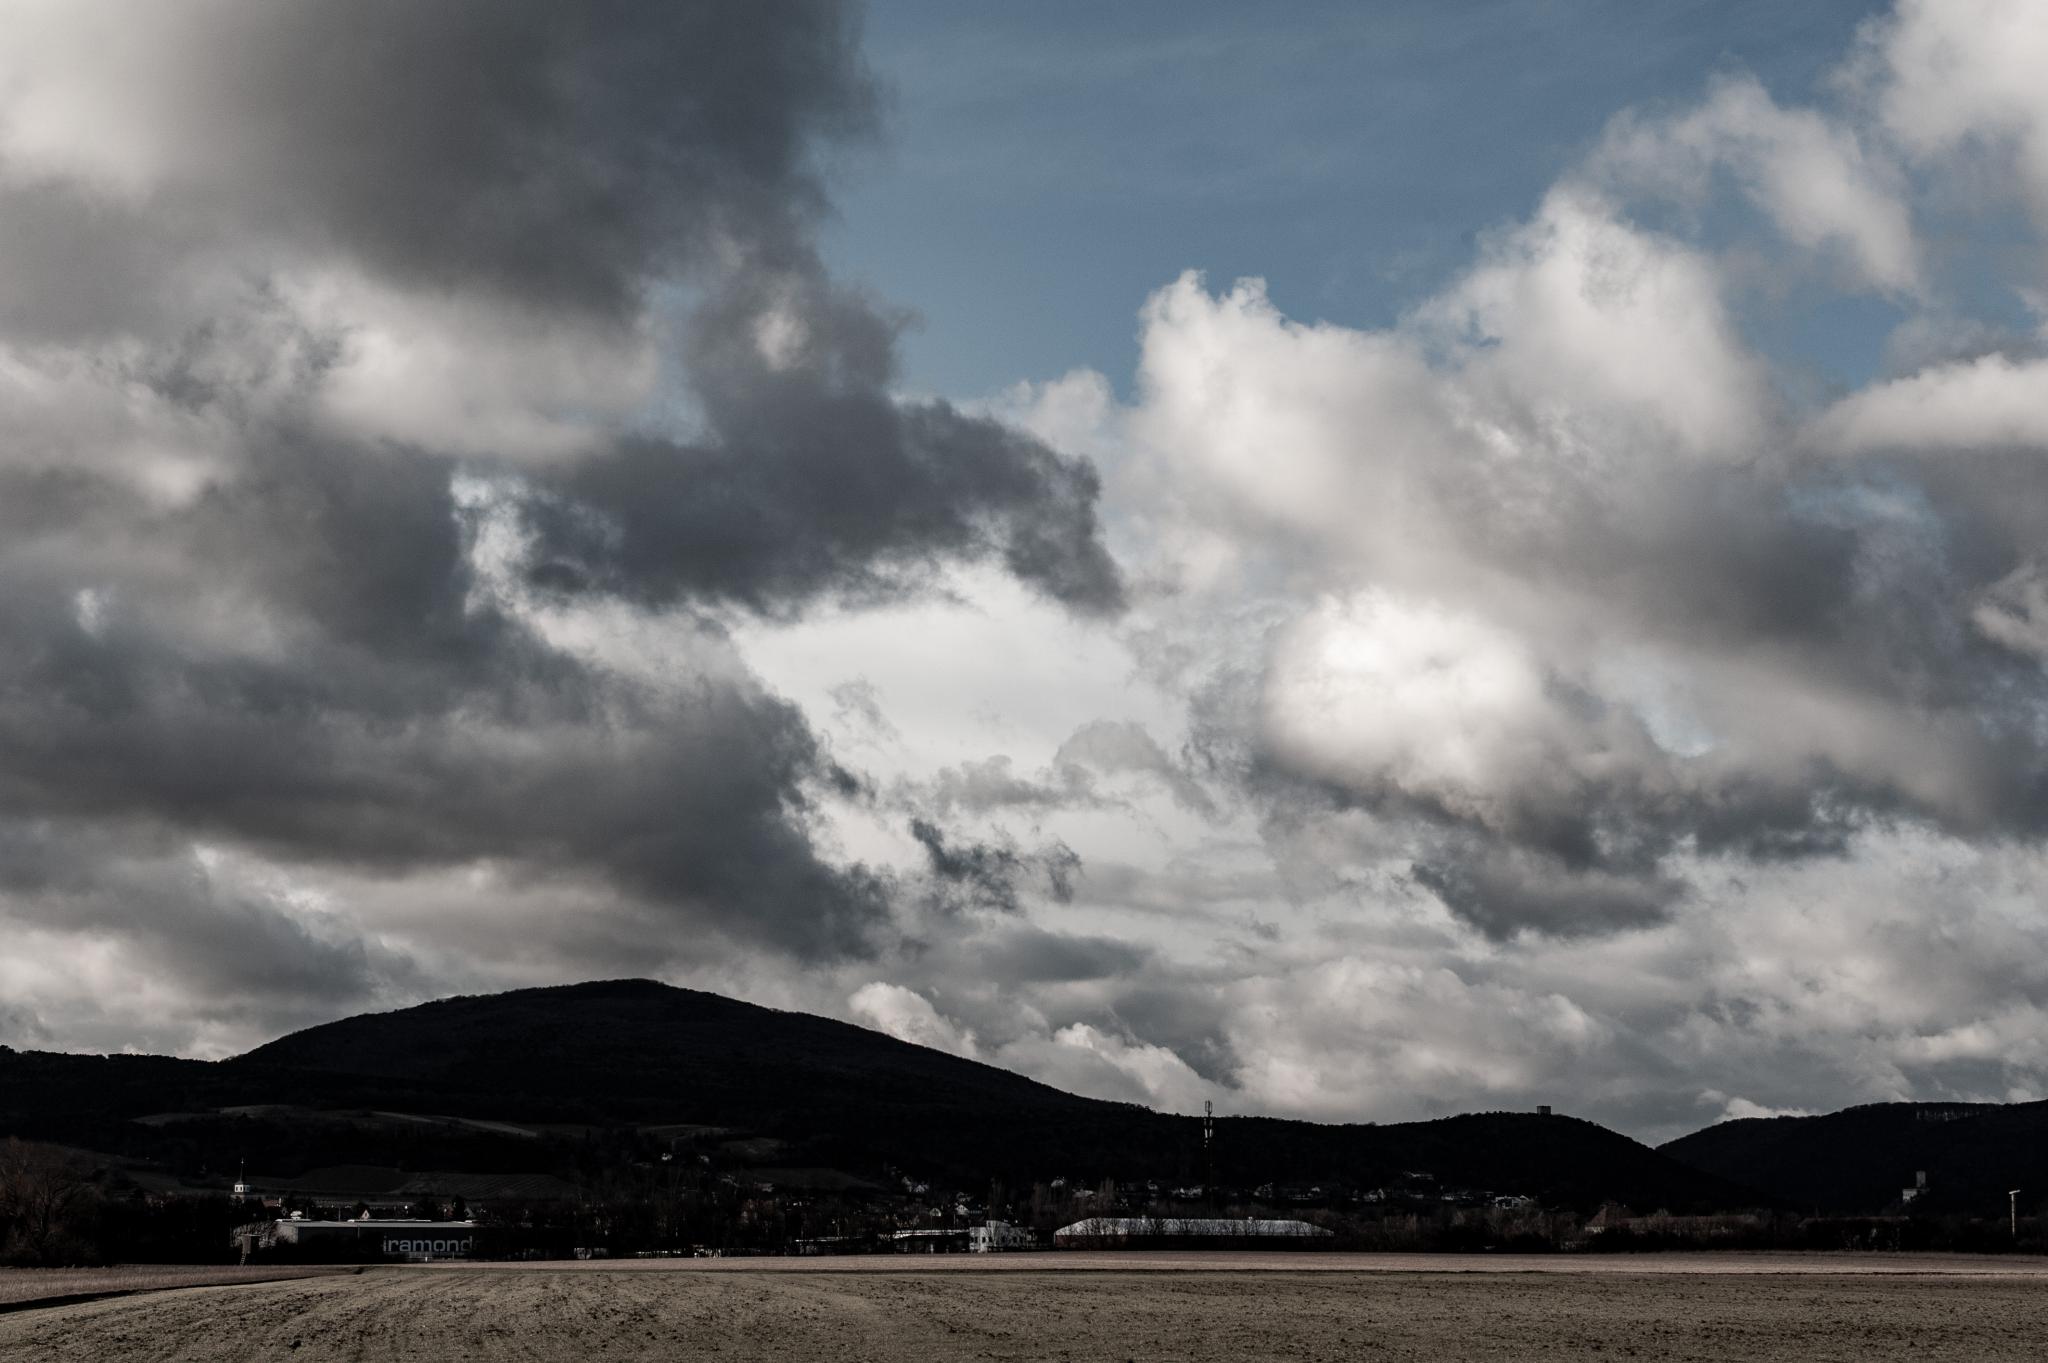 Wolken fotografieren mit Teleobjektiv und Spiegelreflexkamera